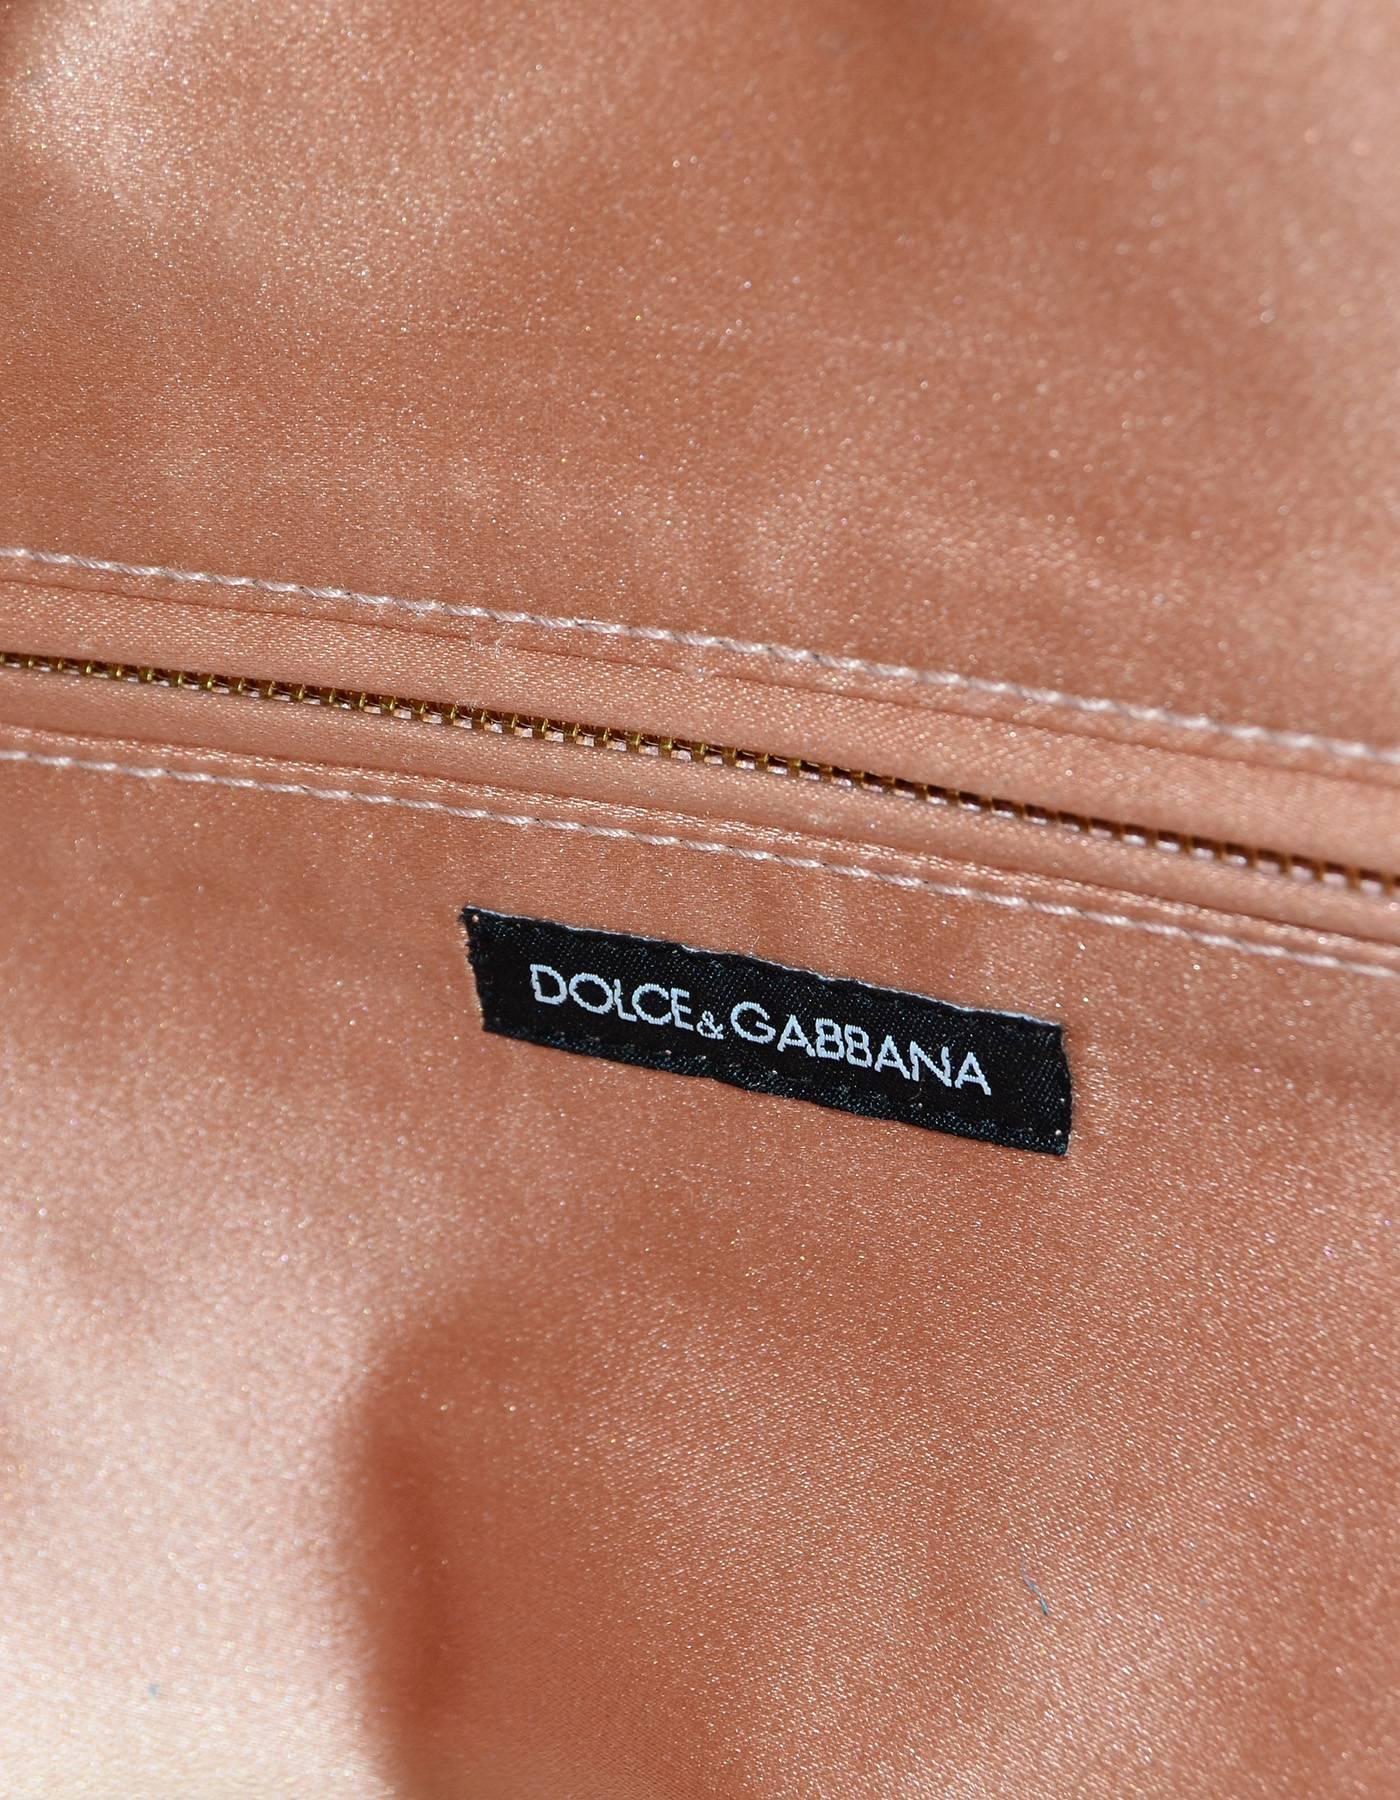 Dolce & Gabbana Summer '16 Embellished Runway Tote Bag 3